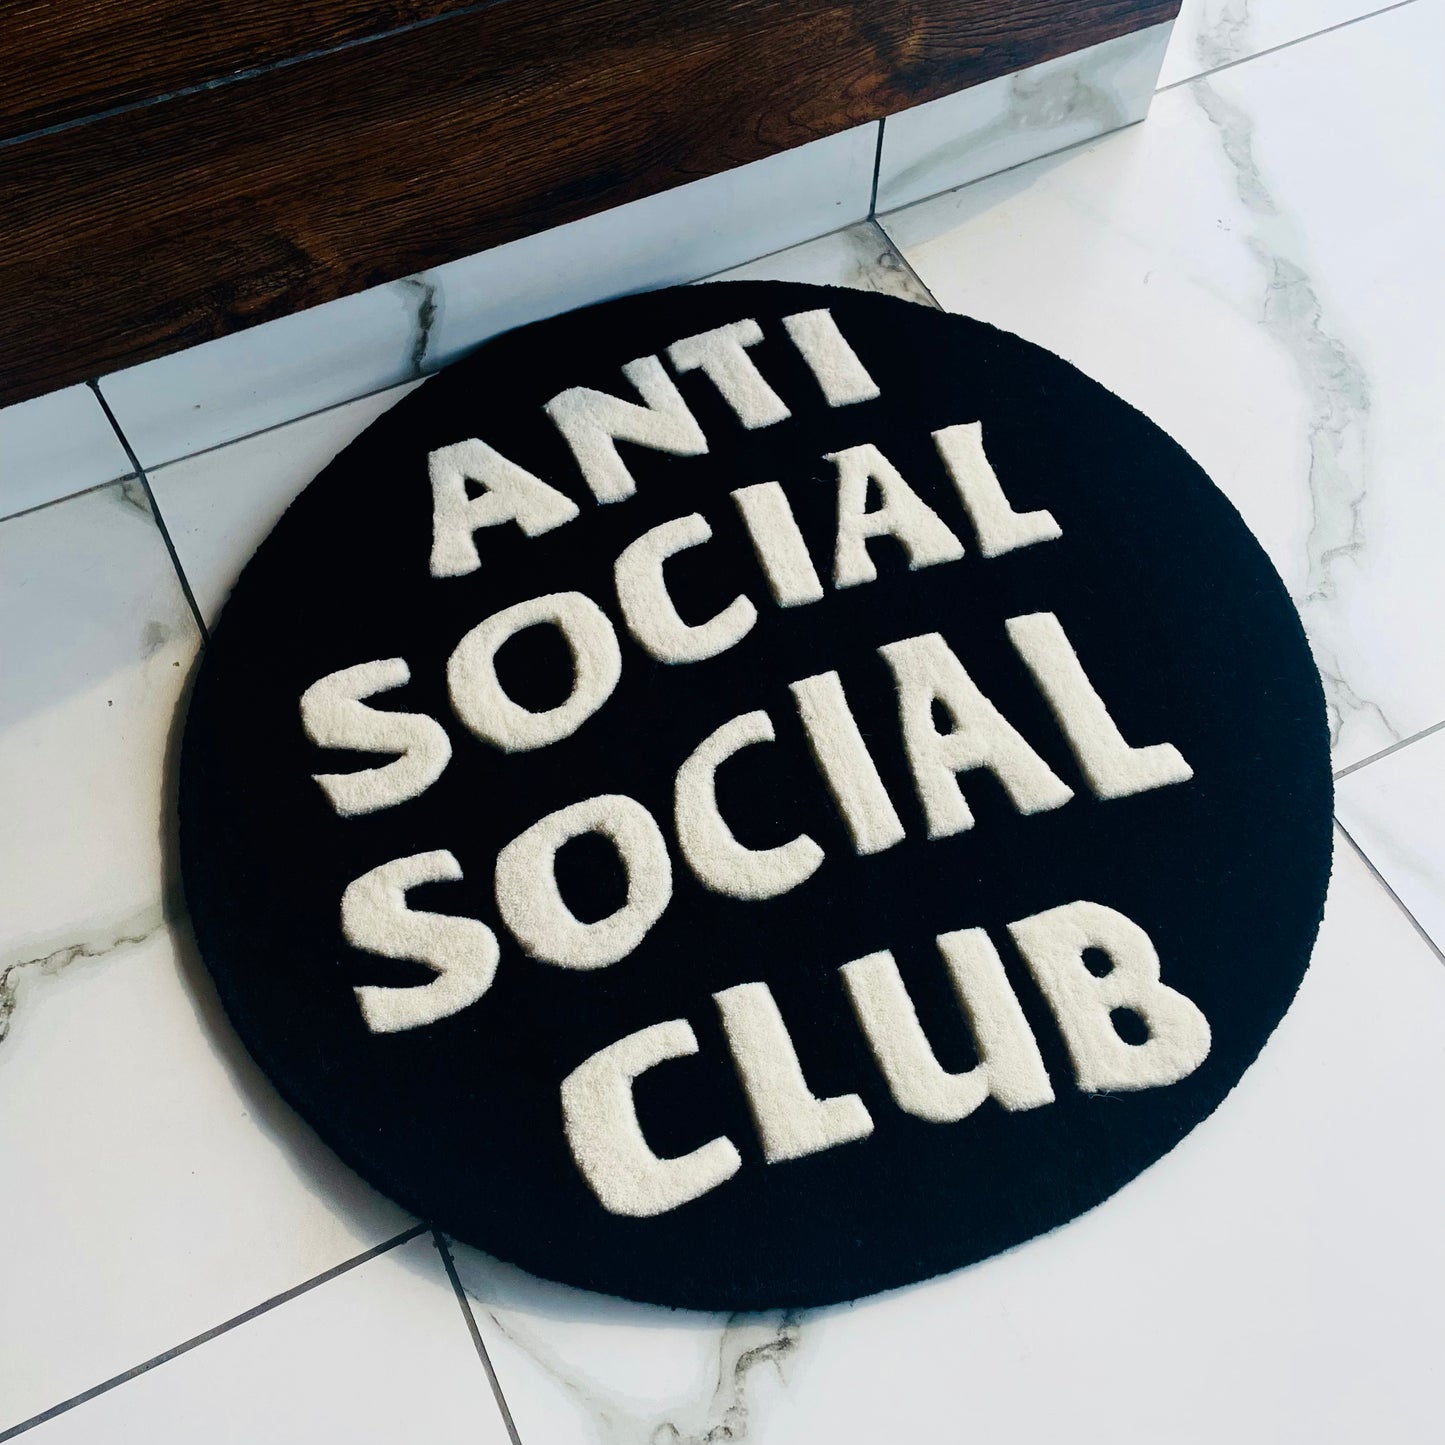 Anti-Social Social Club rug side view